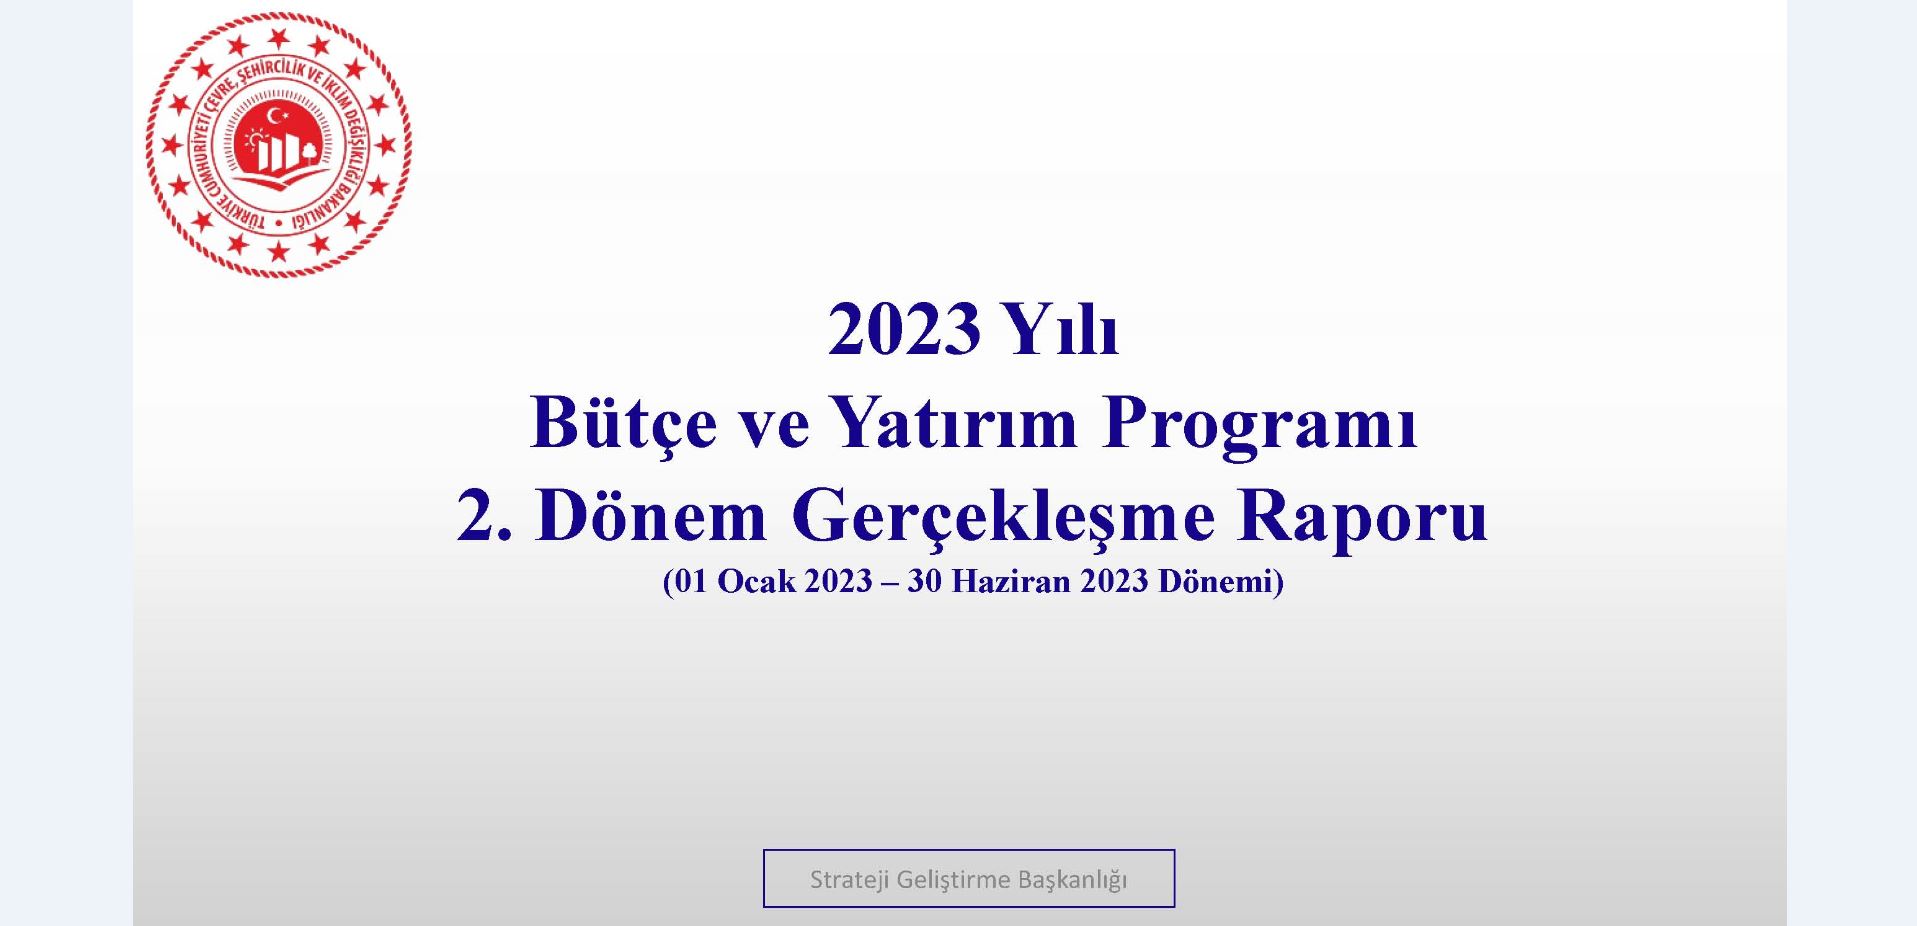 2. Üç Aylık Bütçe Gerçekleşme Raporu (2023)